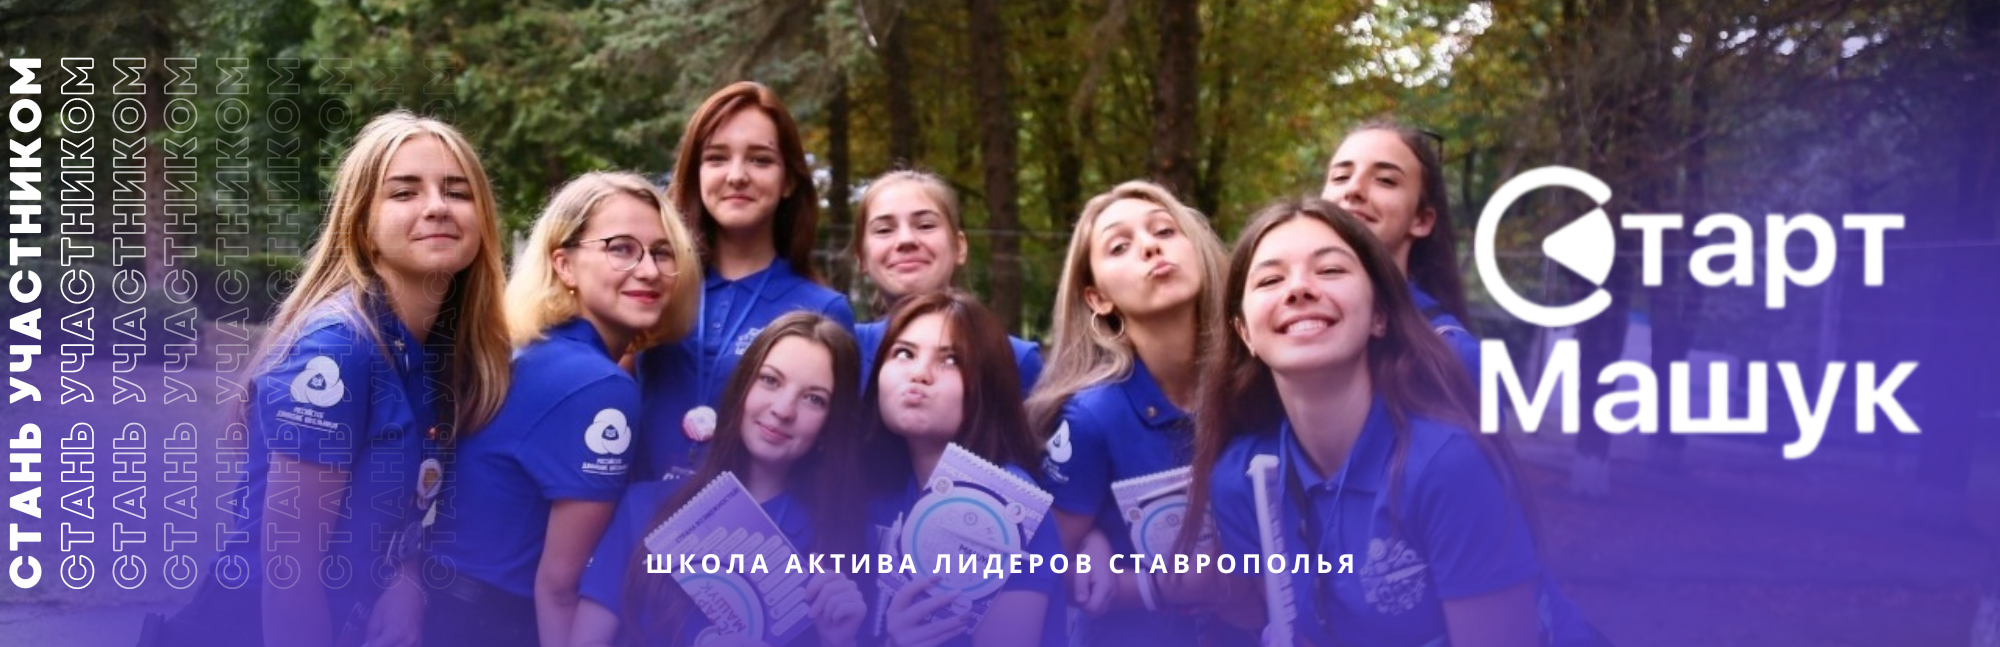 Школа актива «Старт Машук» | Ставропольский край